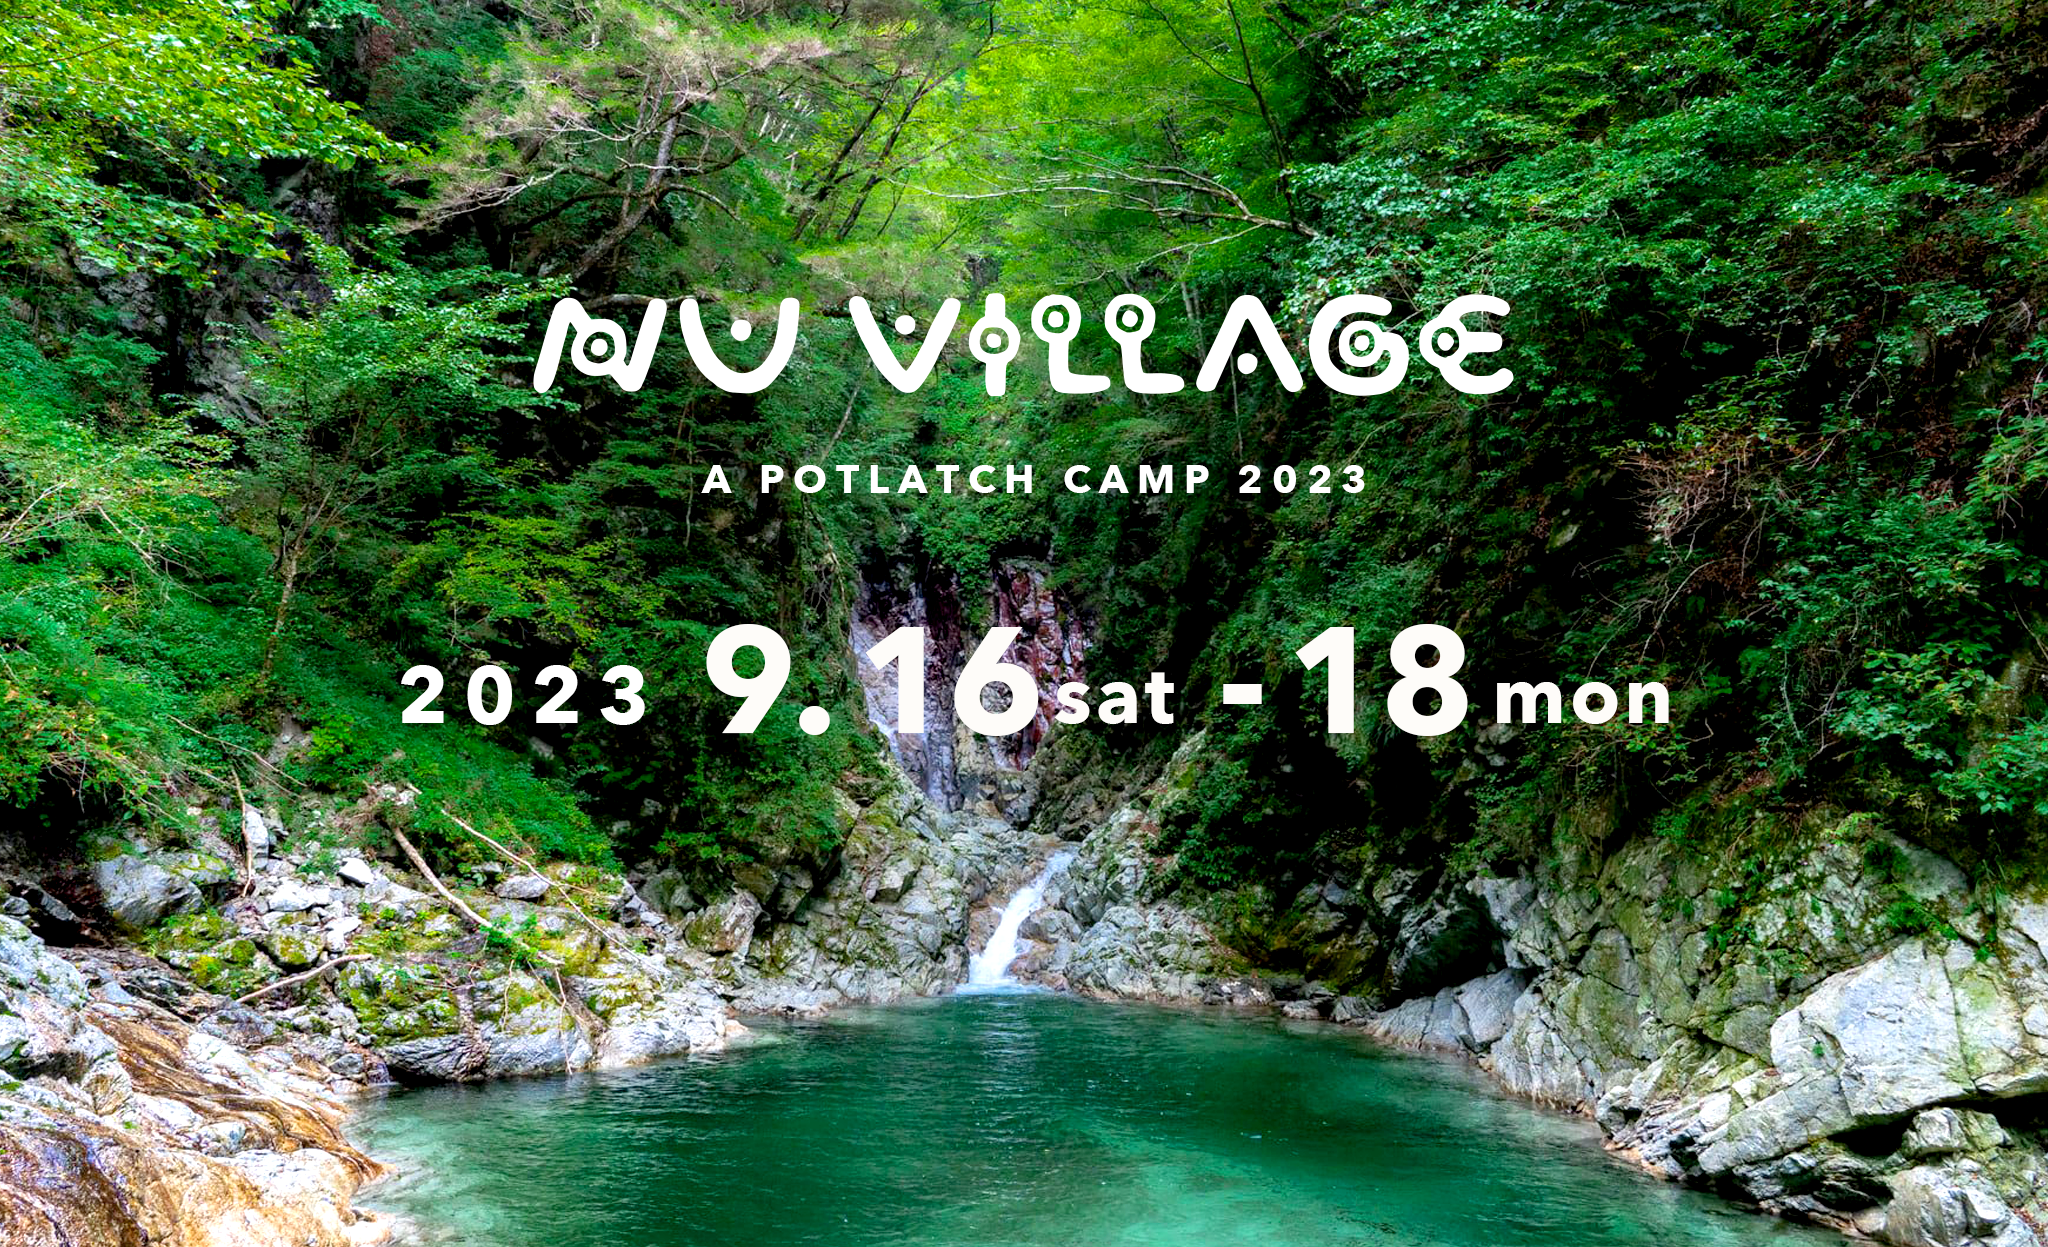 【10周年】NU VILLAGE – a potlatch camp 2023